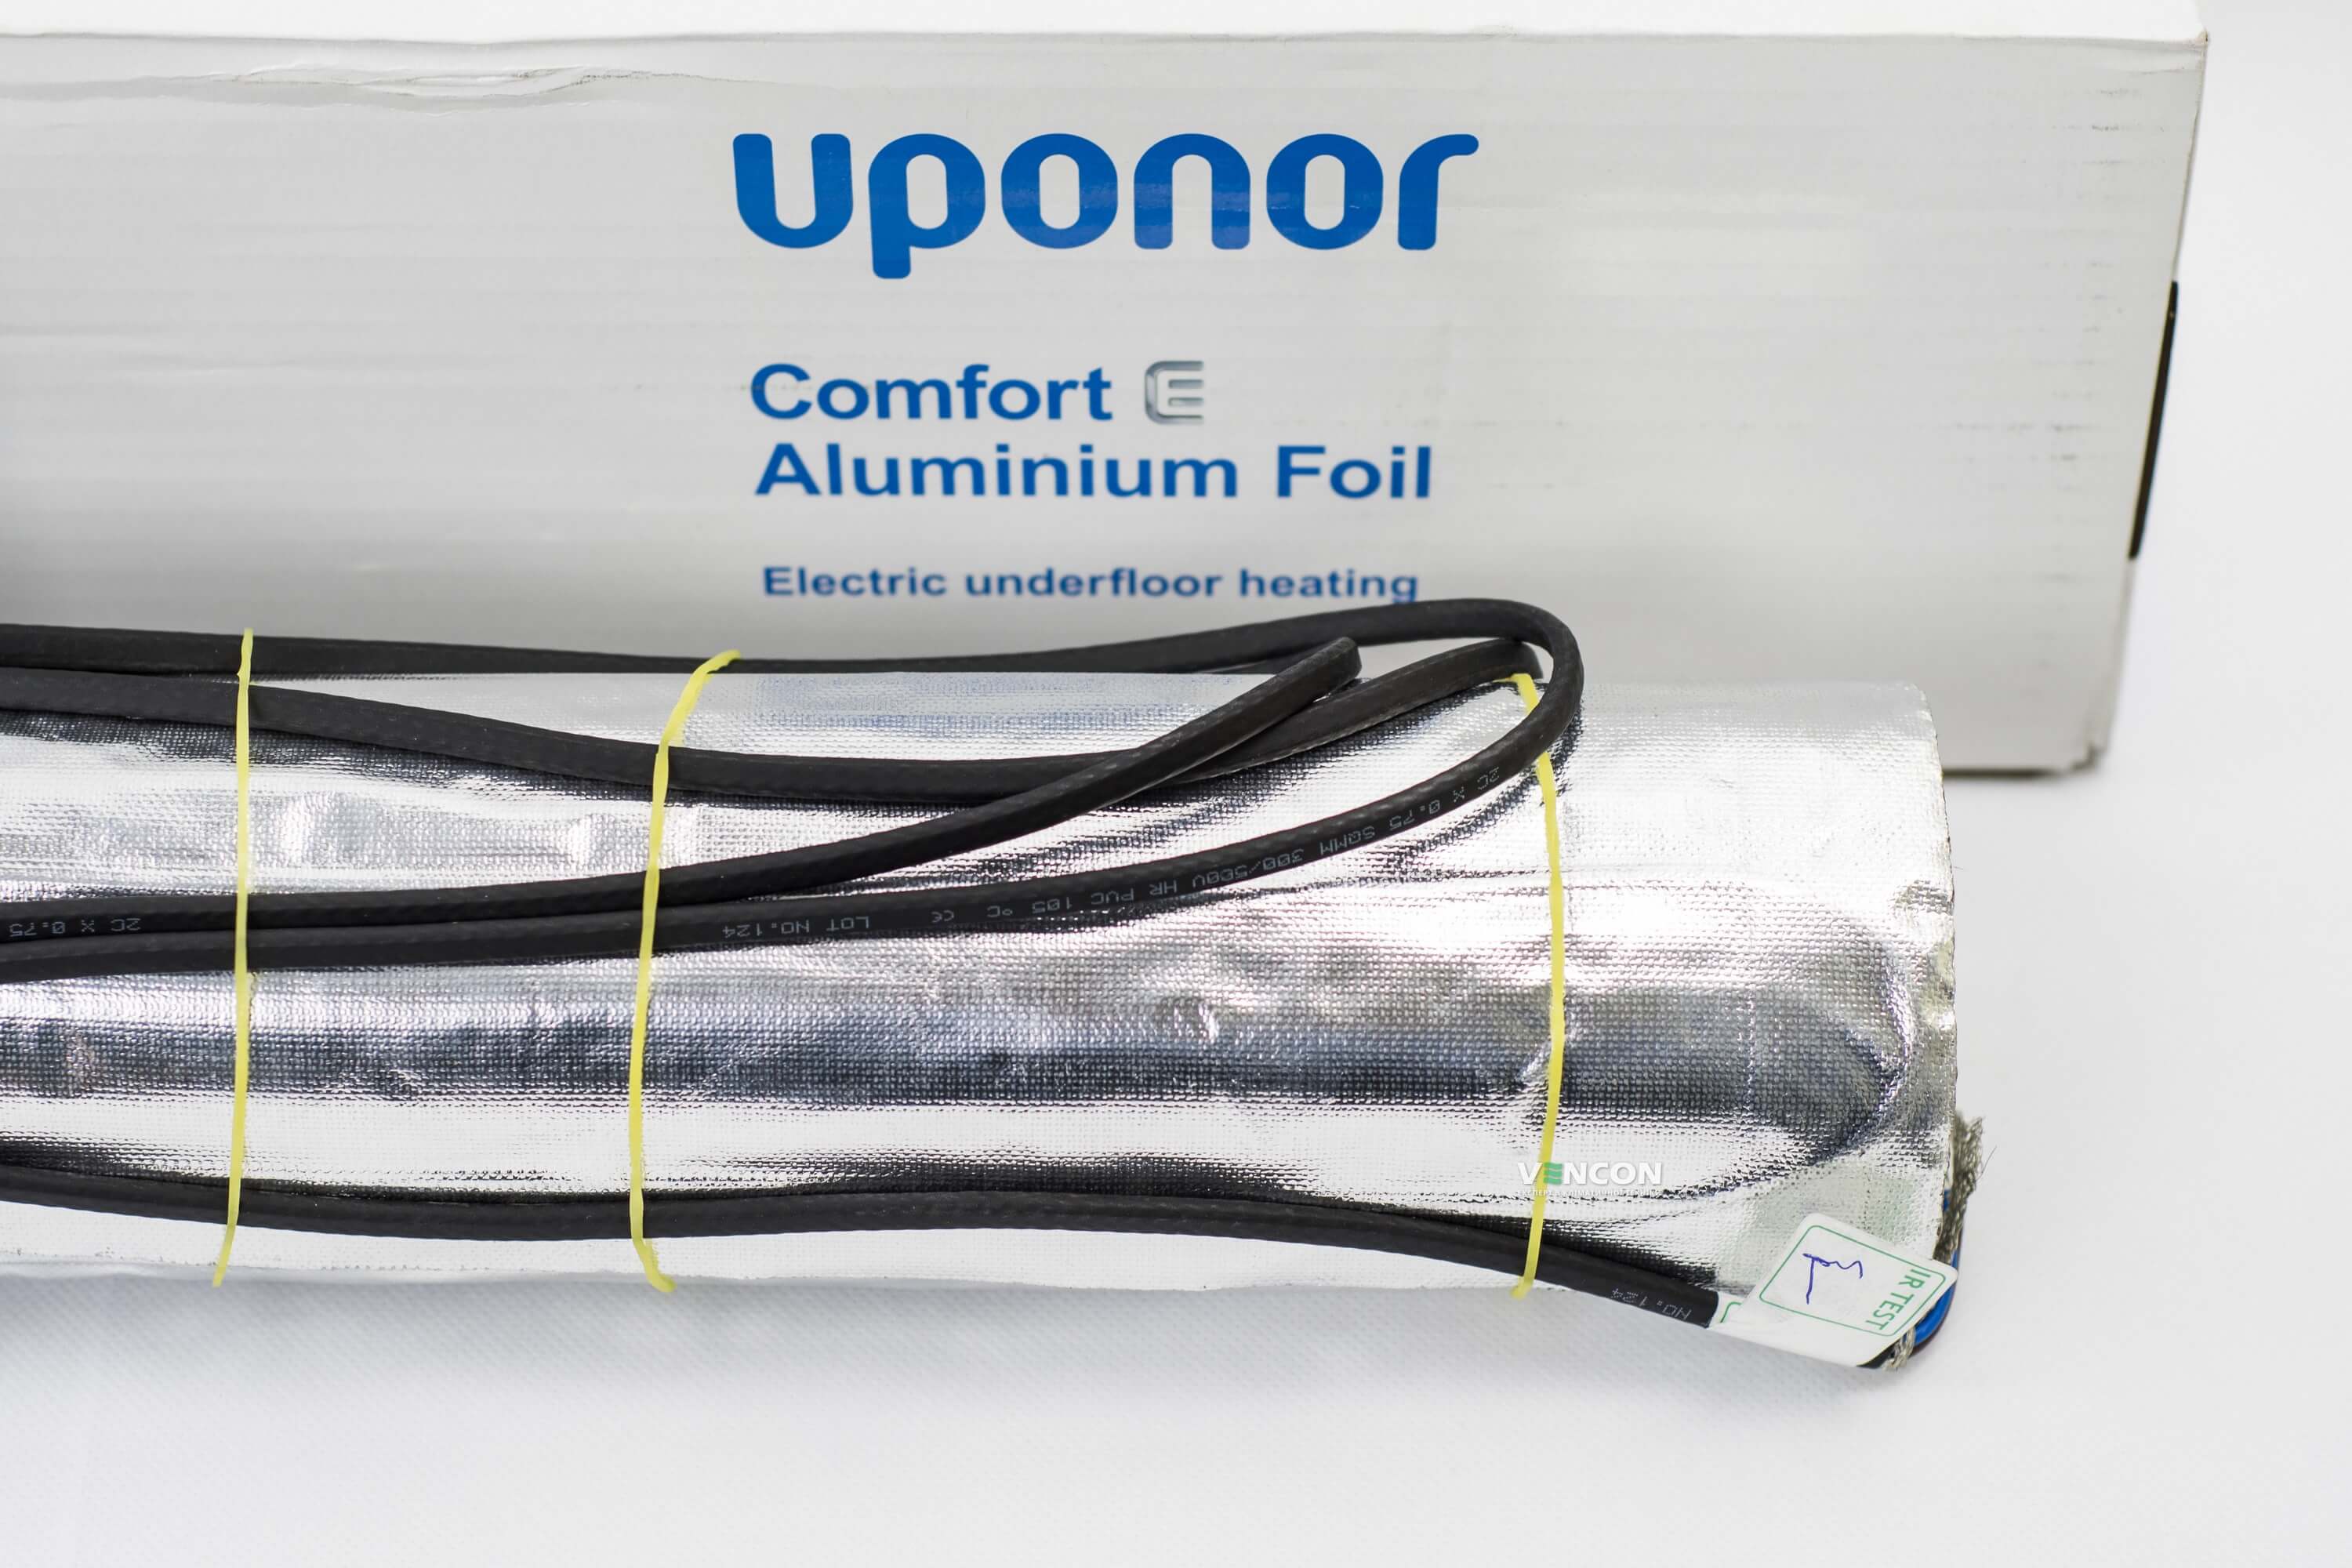 Электрический теплый пол Uponor Aluminium Foil 140-5 отзывы - изображения 5